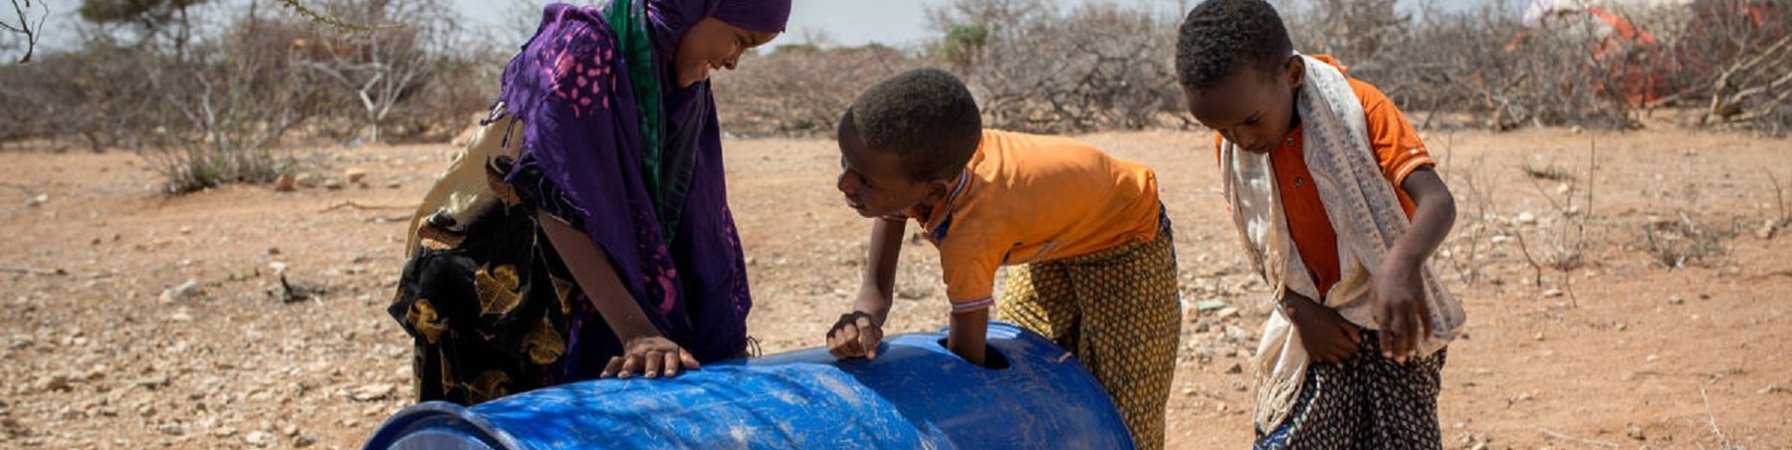 bambini somali che cercano di prelevare dell acqua da una tanica